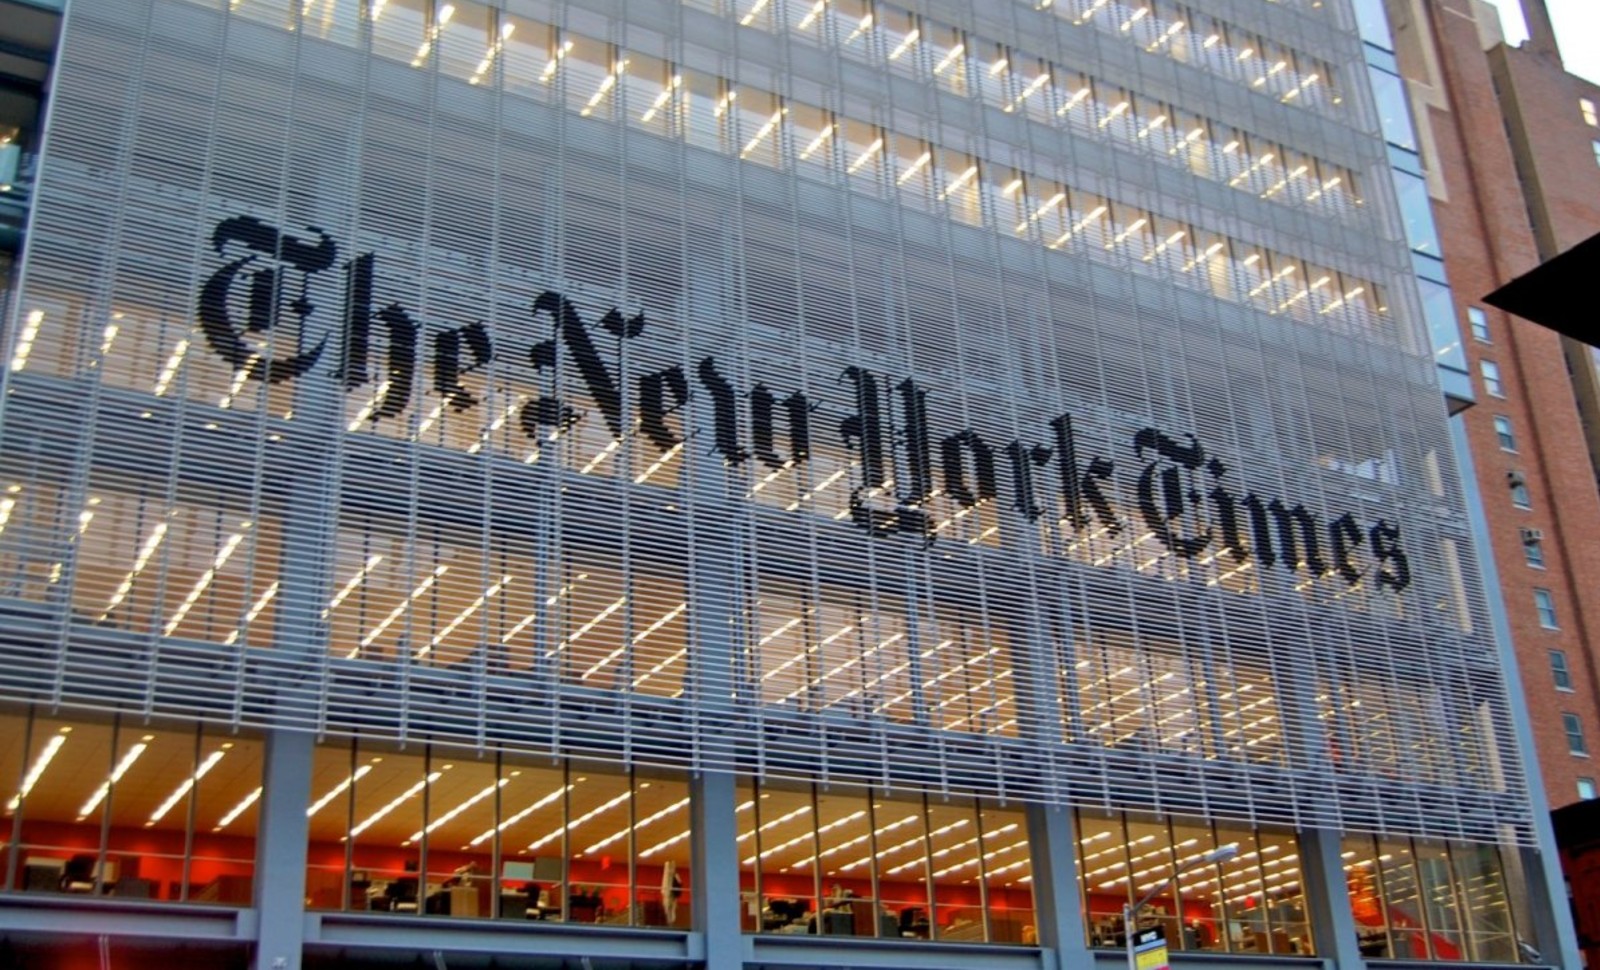 Faux jihadiste, choix éditoriaux douteux: les casseroles à répétition du « New York Times »